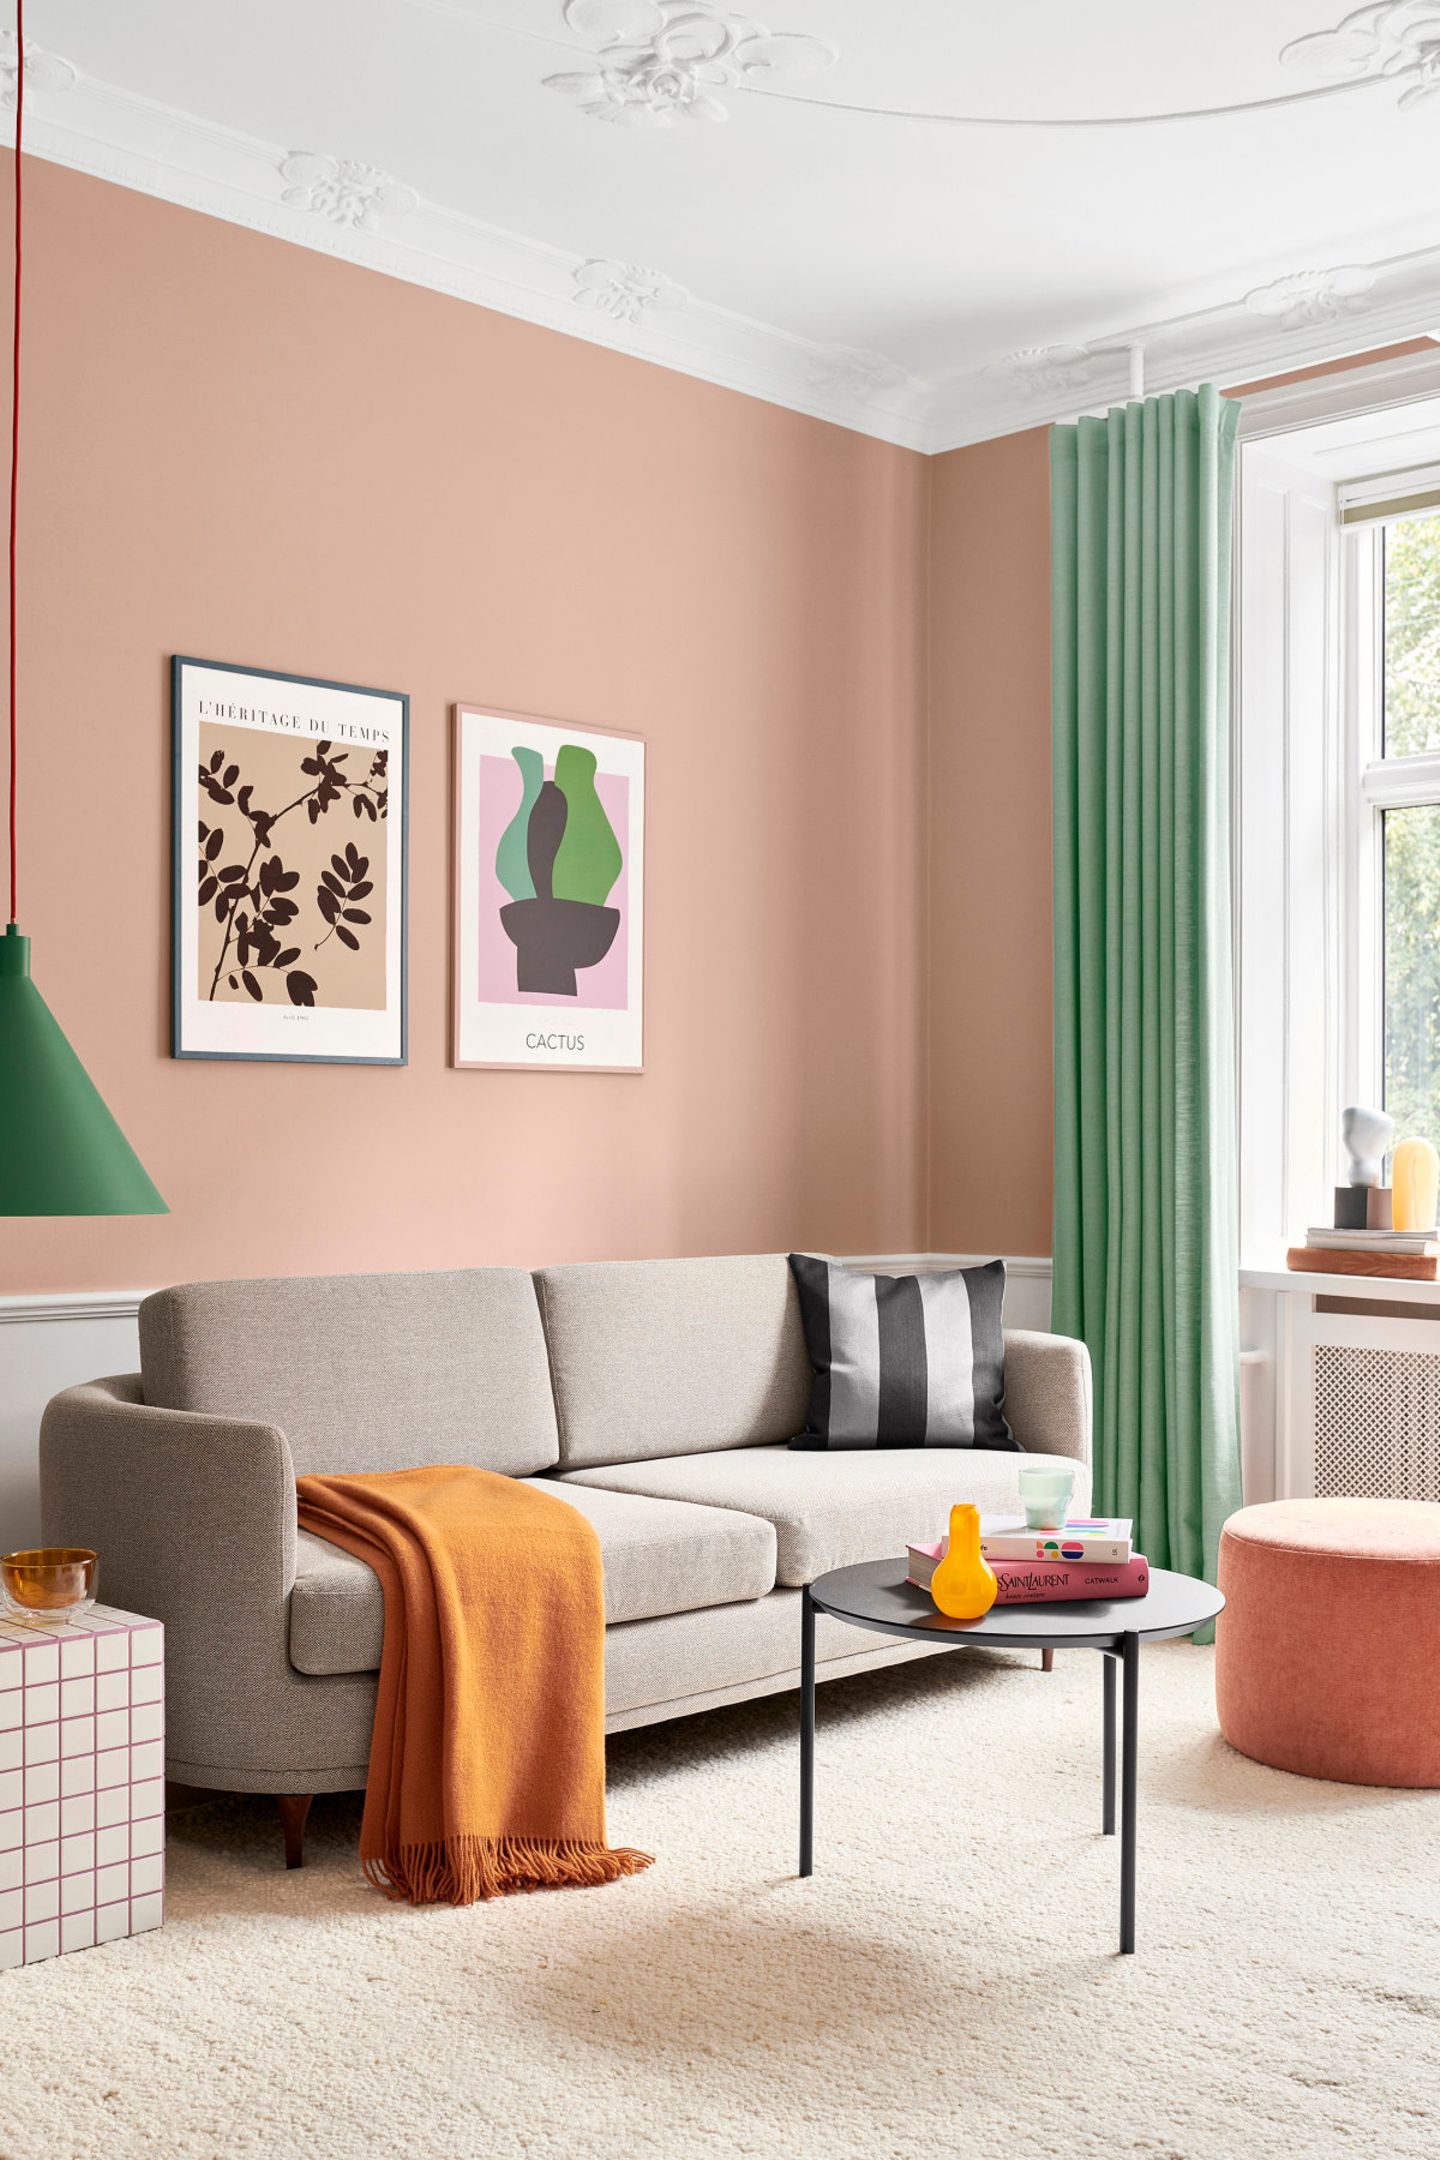 Wohnzimmer mit pfirsichfarbener Wand, weißem Stuck und grauem Sofa